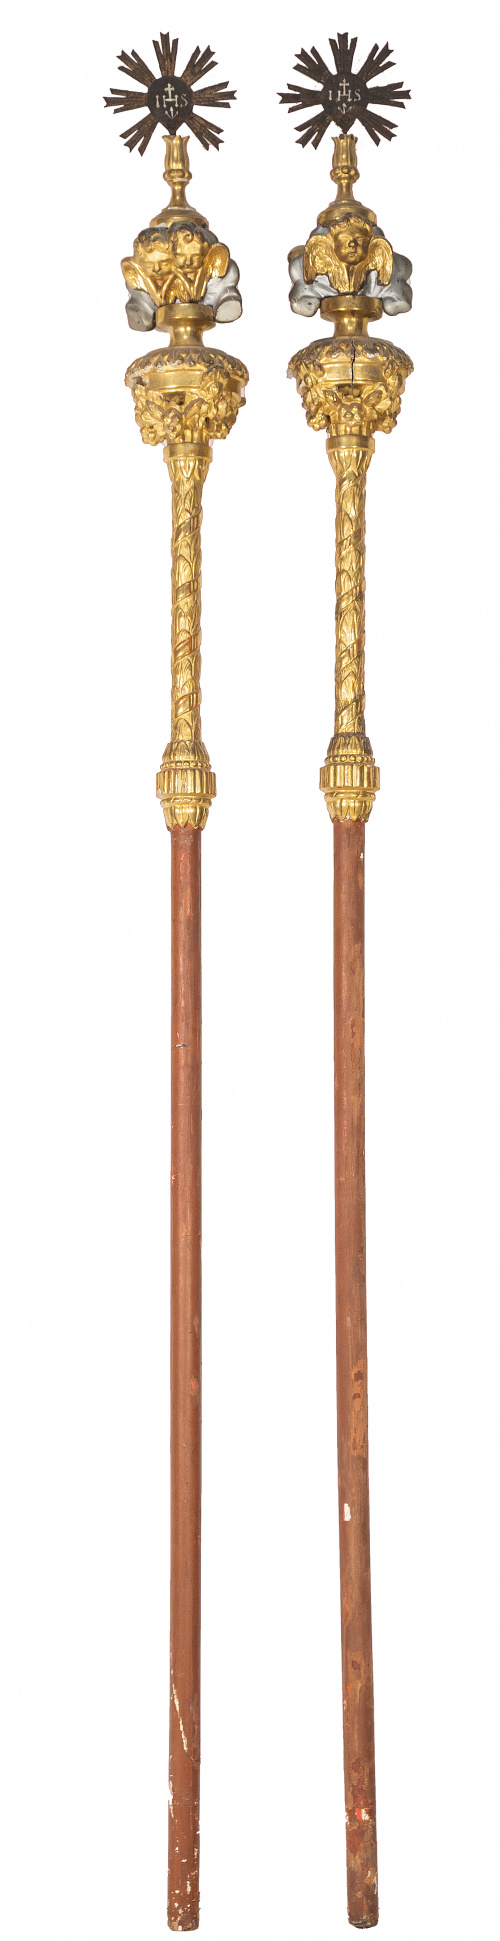 Pareja de varas procesionales Carlos IV en madera tallada, 